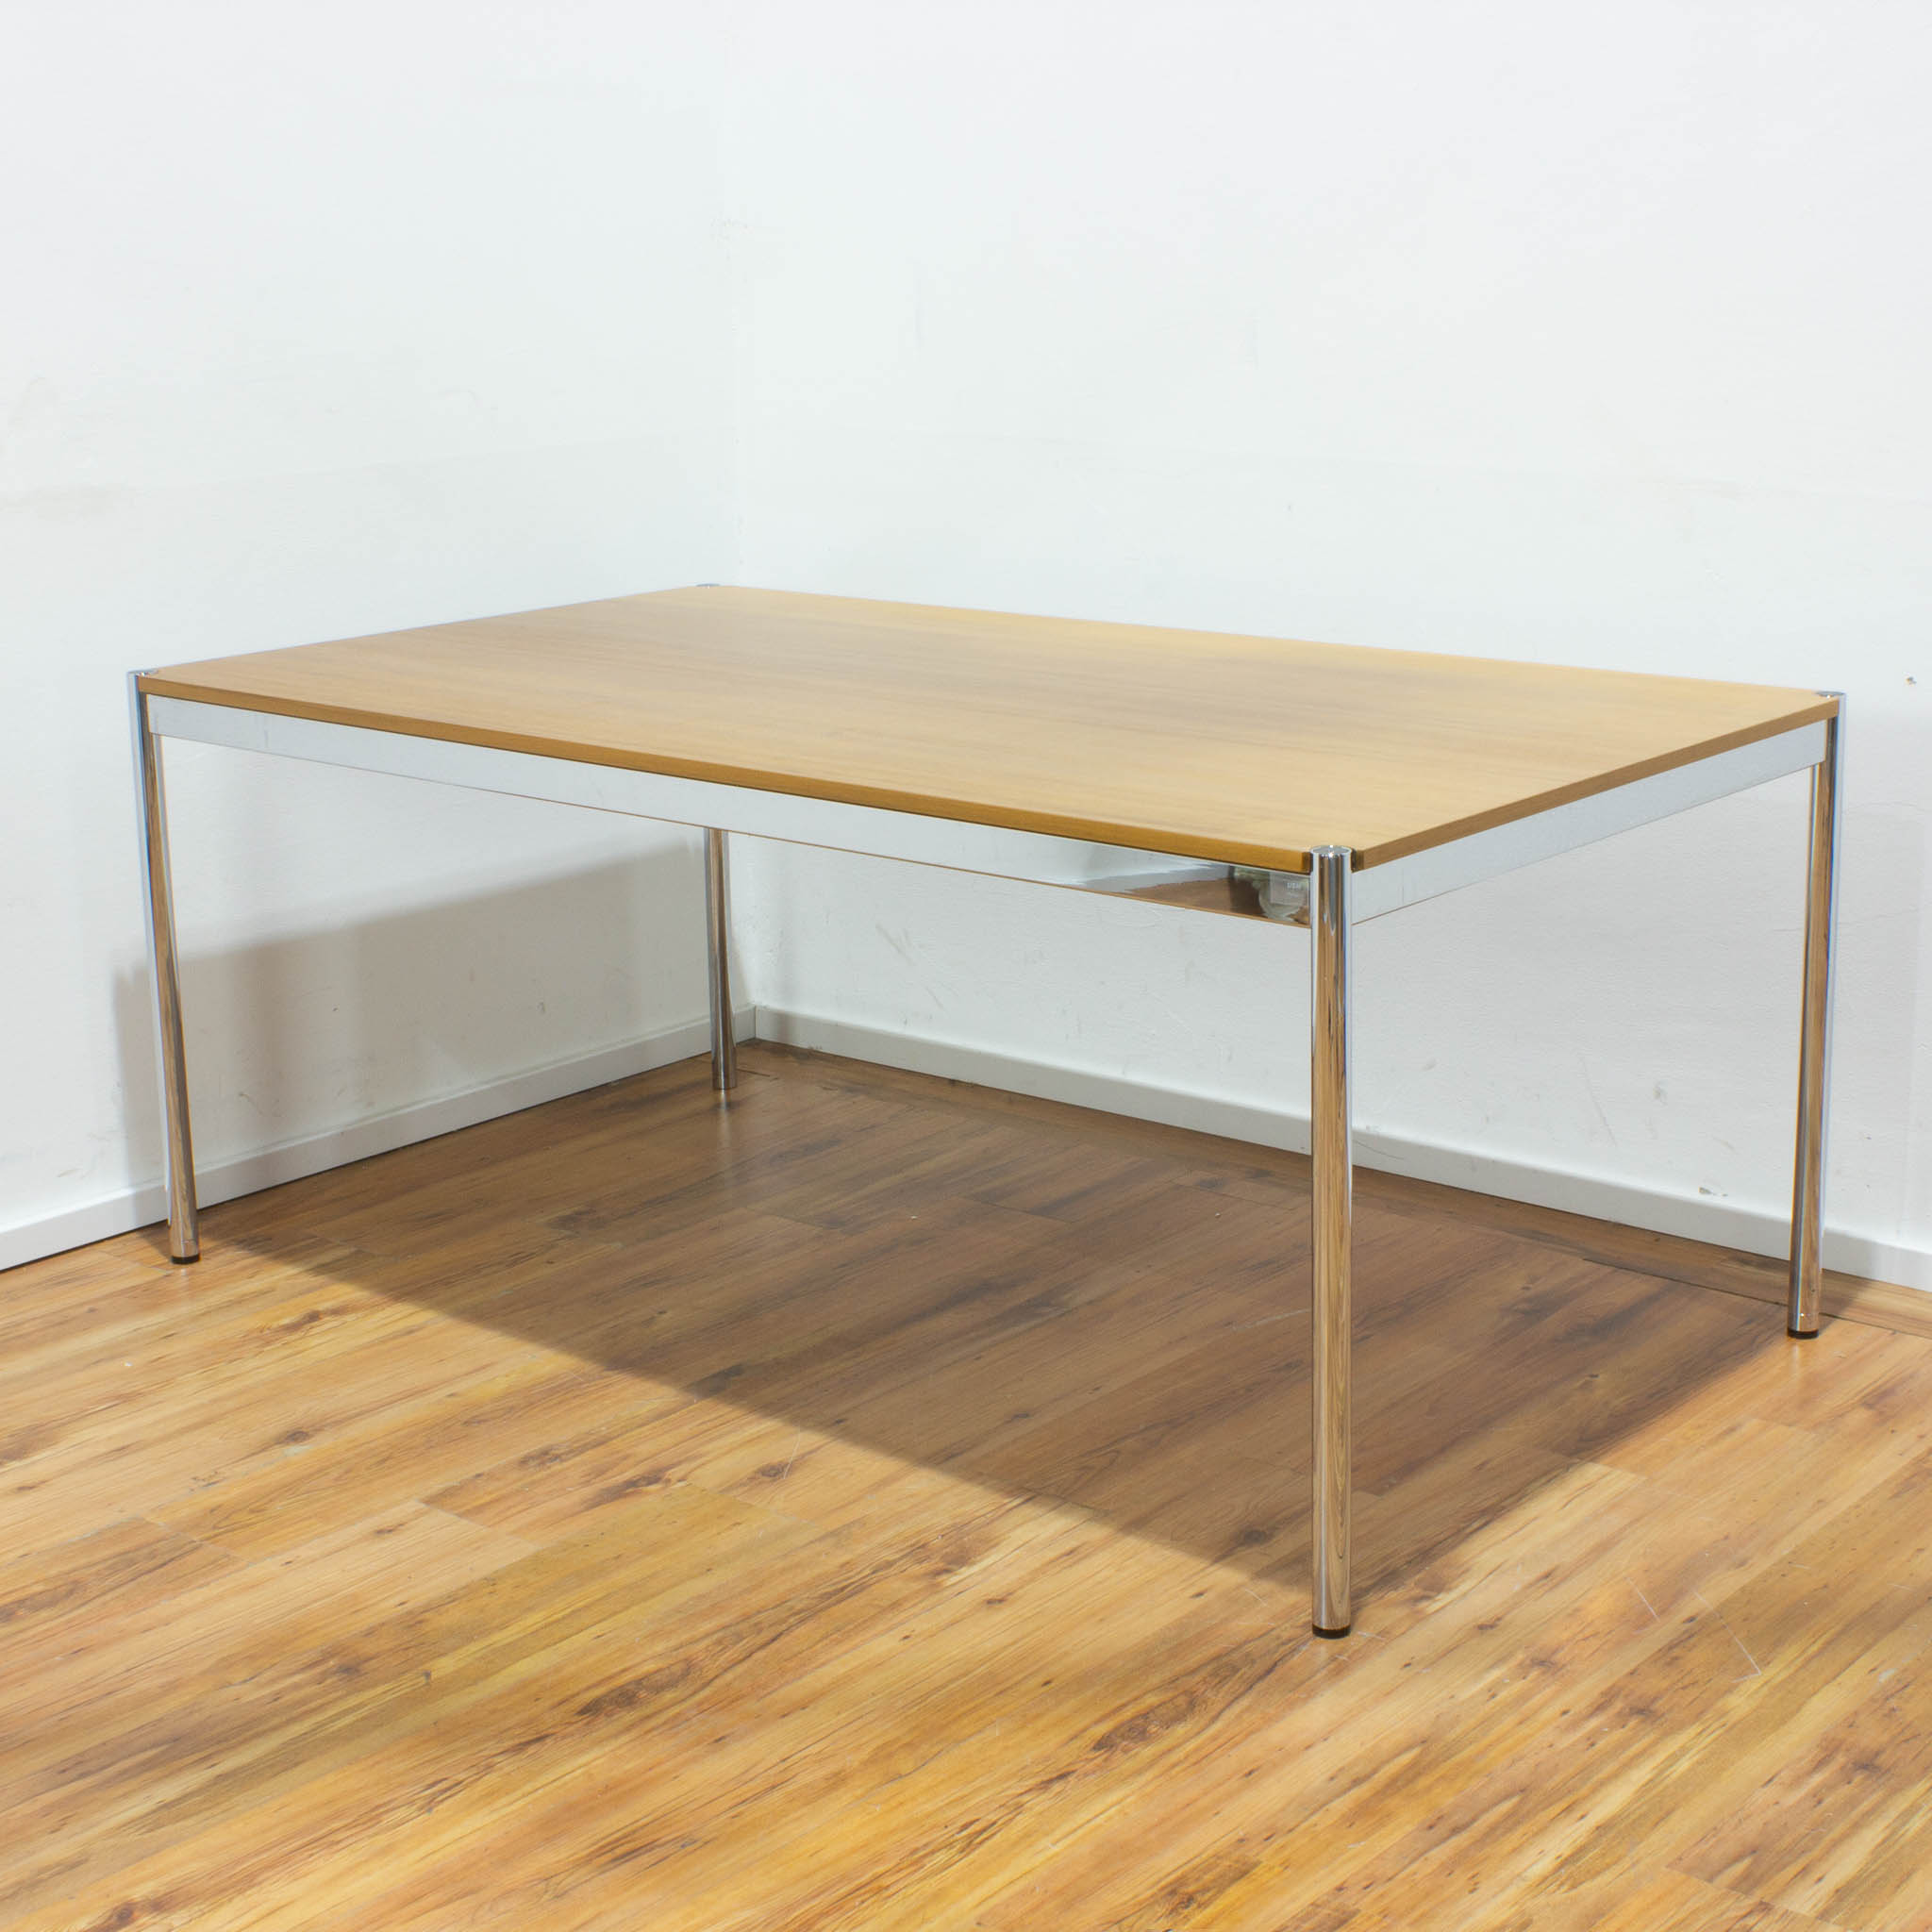 USM Haller Schreibtisch - Tischplatte buche esche - gebraucht - 175 x 100 cm